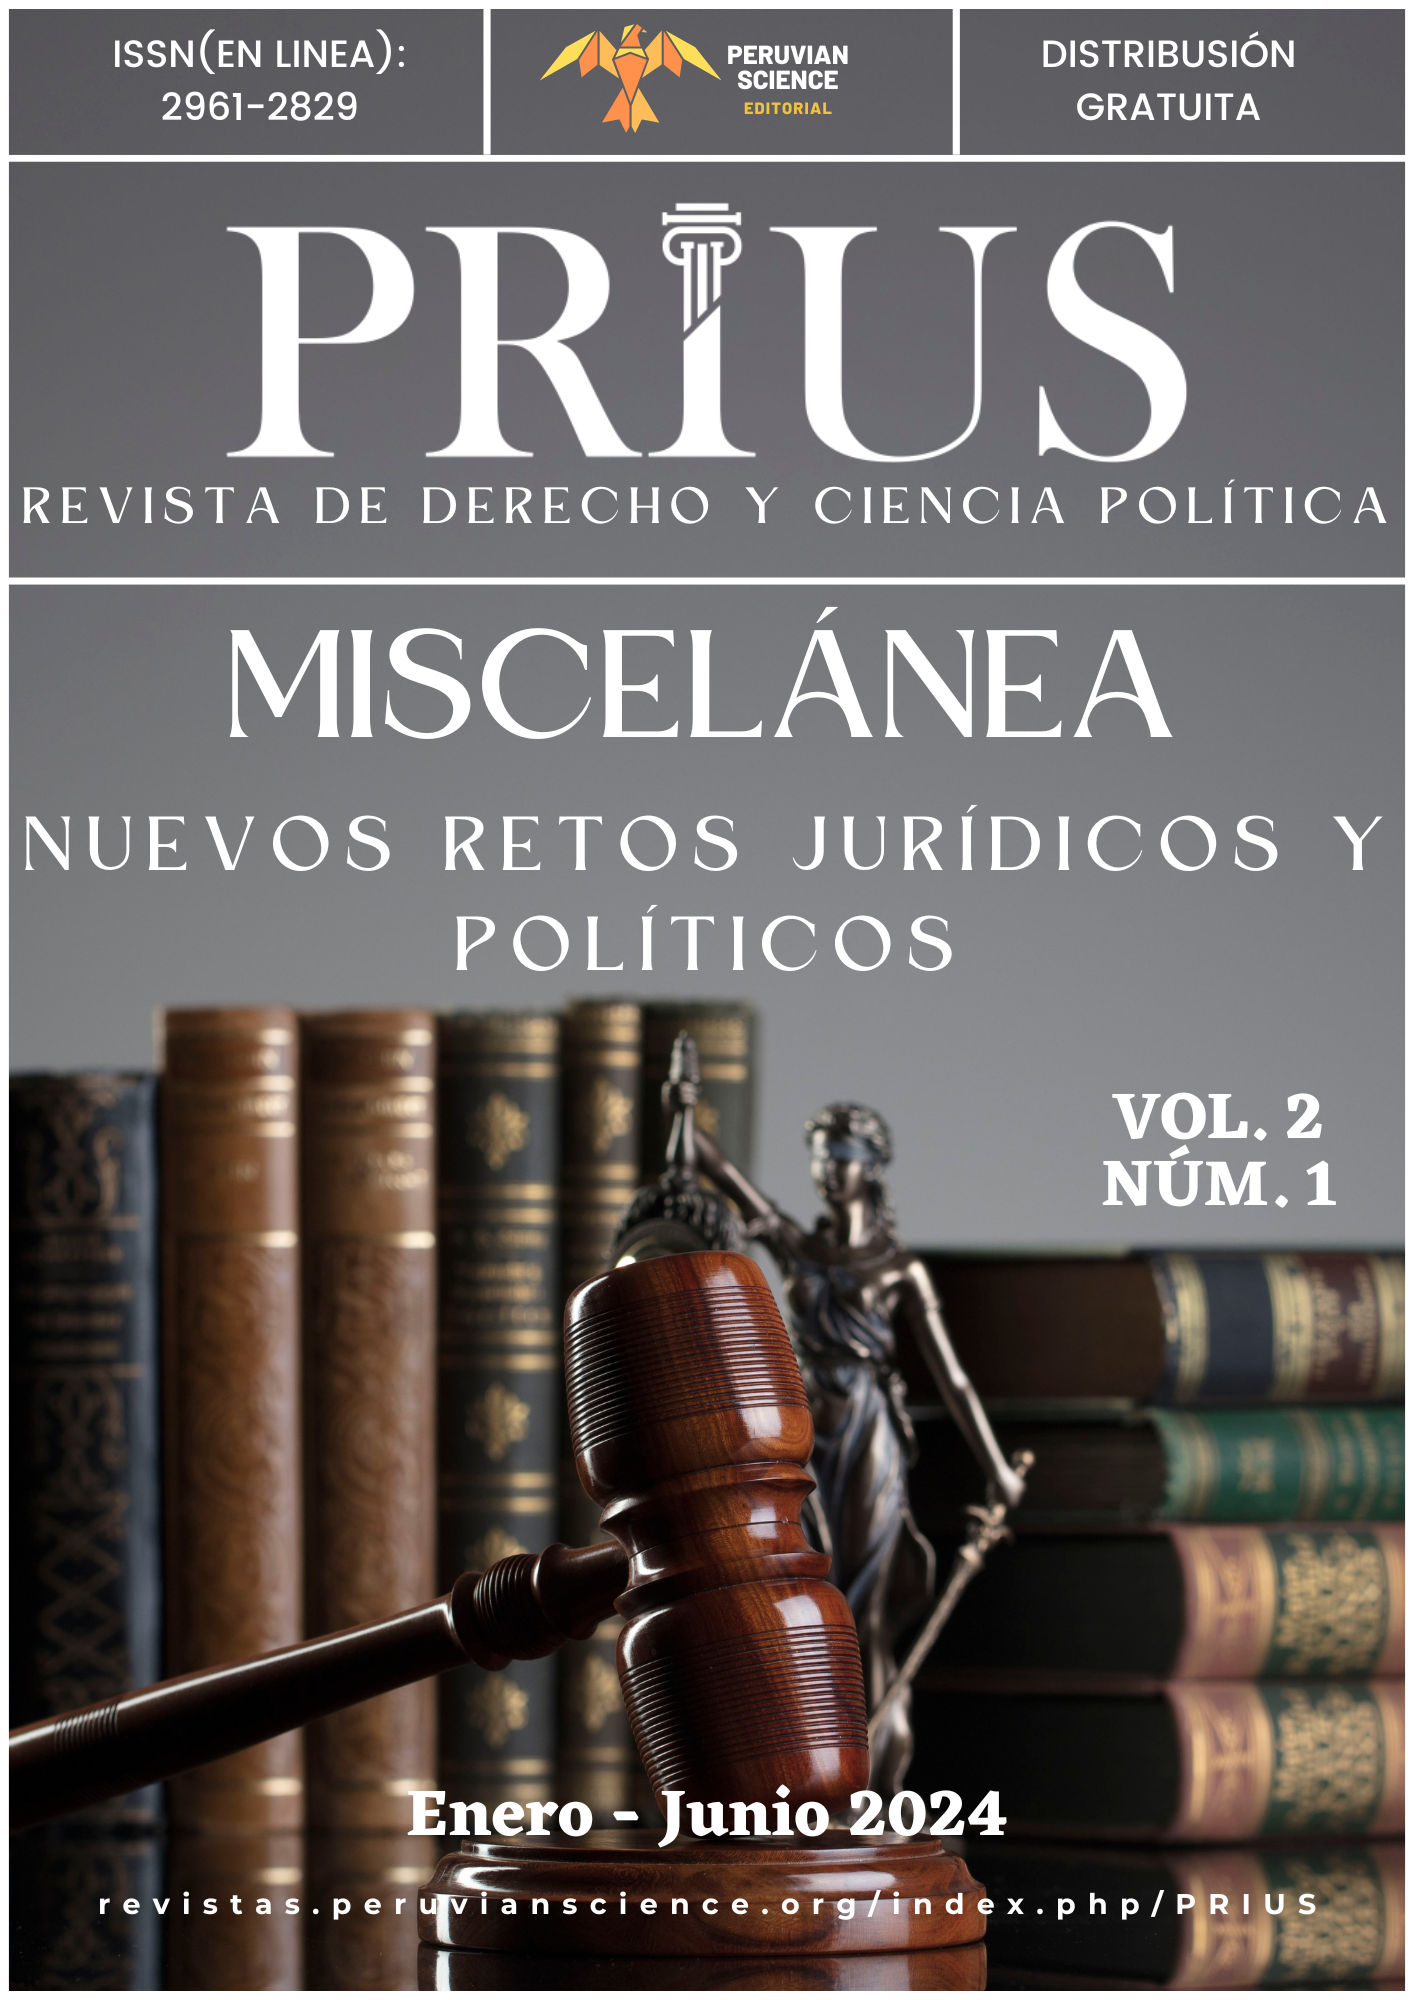 					Ver Vol. 2 Núm. 1 (2024): Miscelánea: Nuevos retos jurídicos y políticos
				